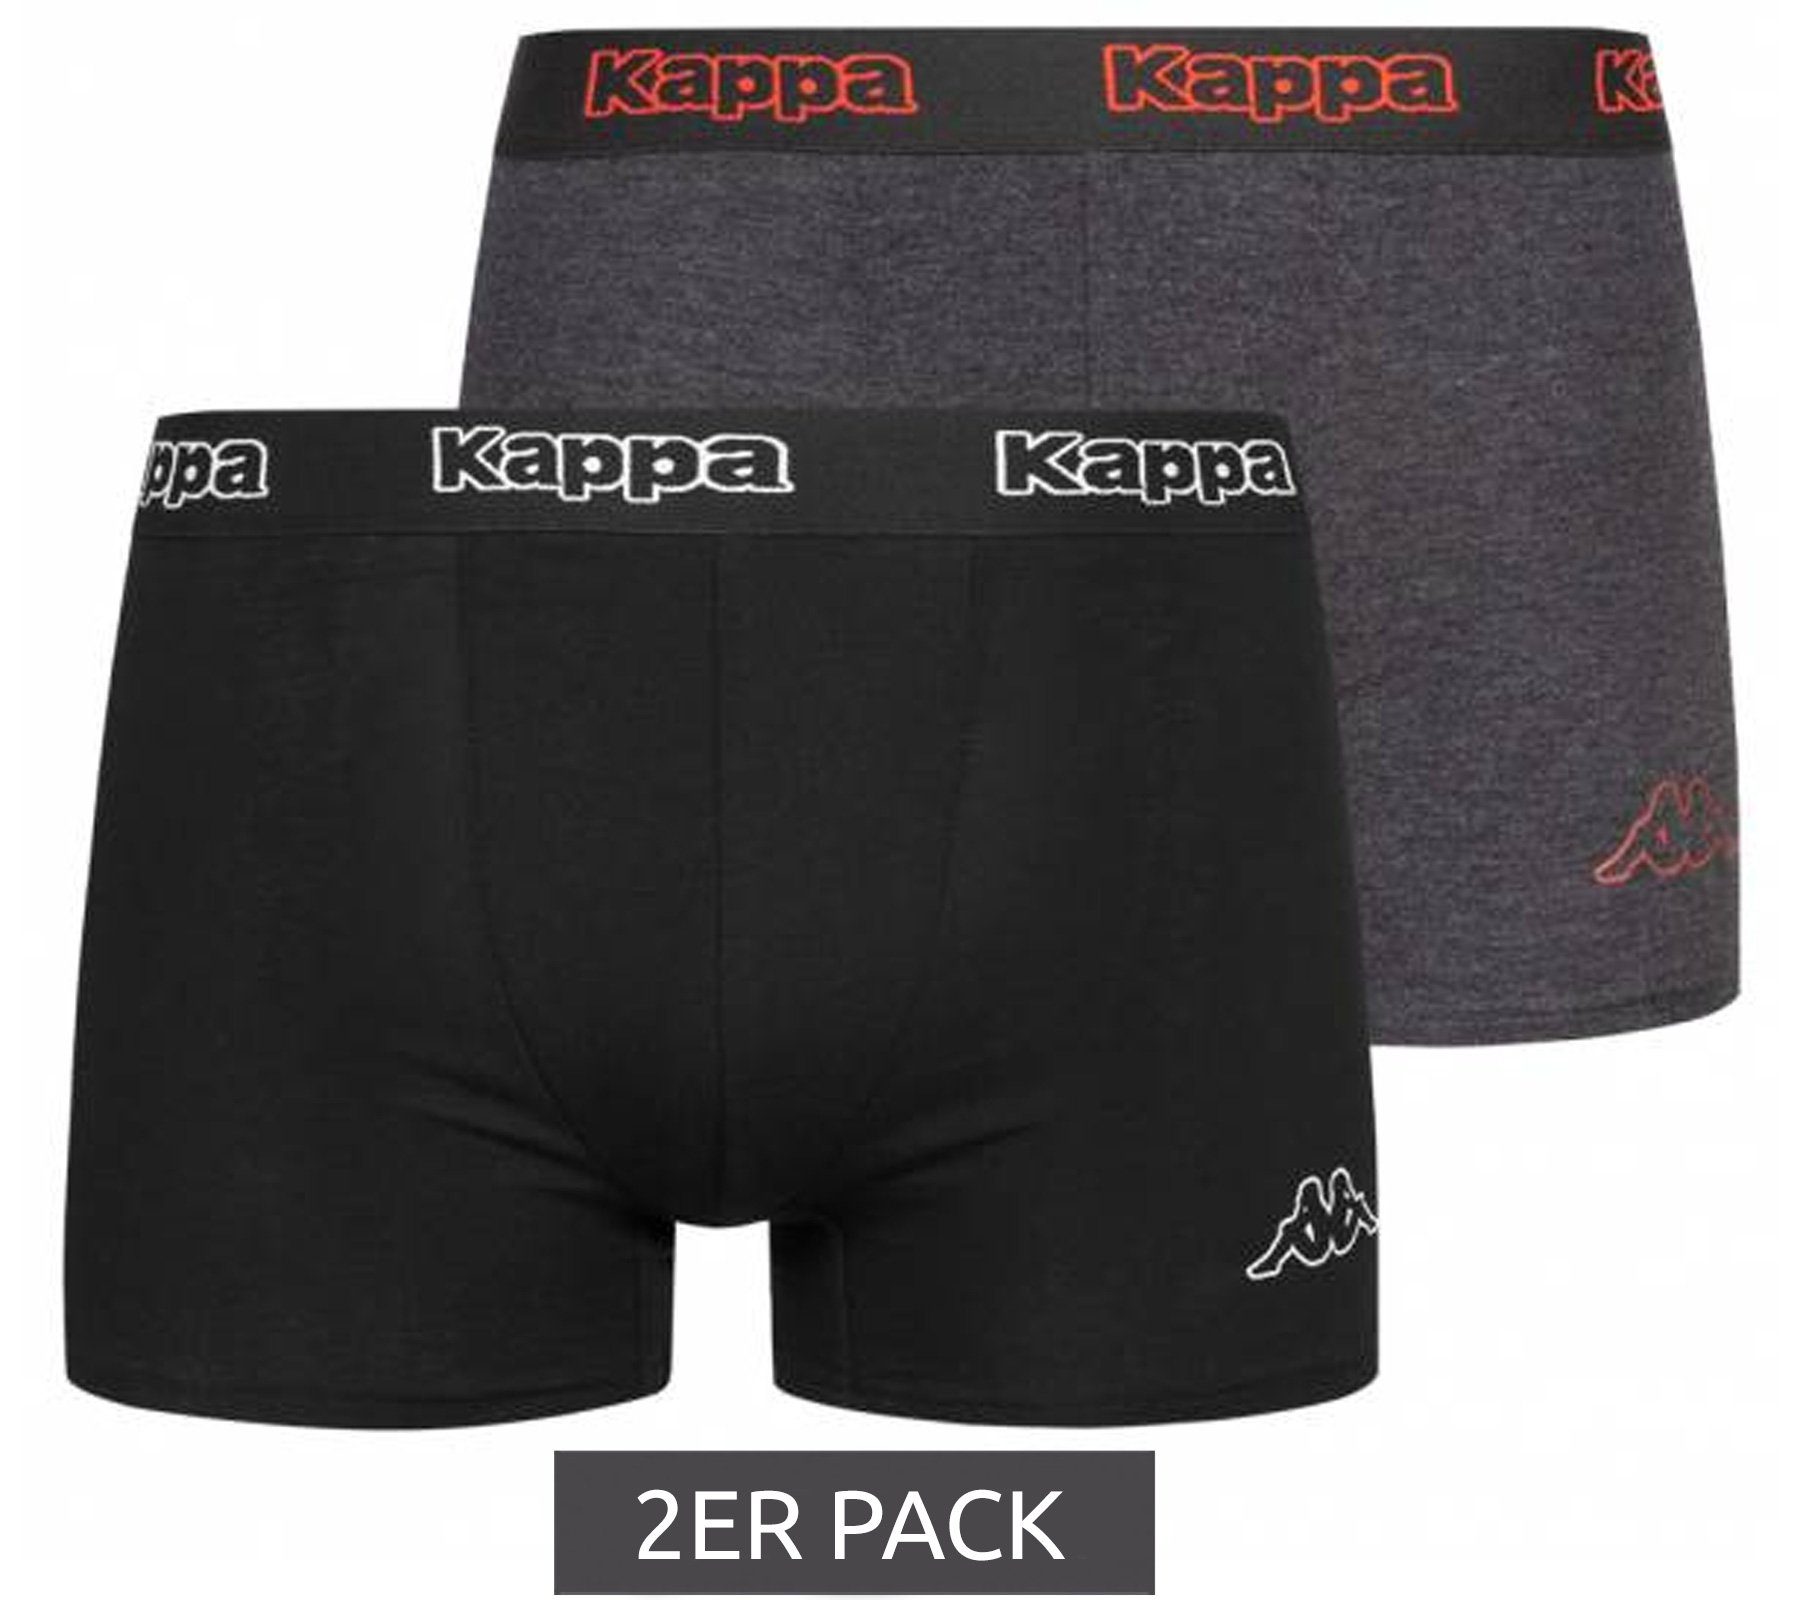 Wäsche/Bademode Boxershorts Kappa Boxershorts 2er Pack Kappa Herren Boxershorts Unterhosen Unterwäsche Schwarz/Anthrazit